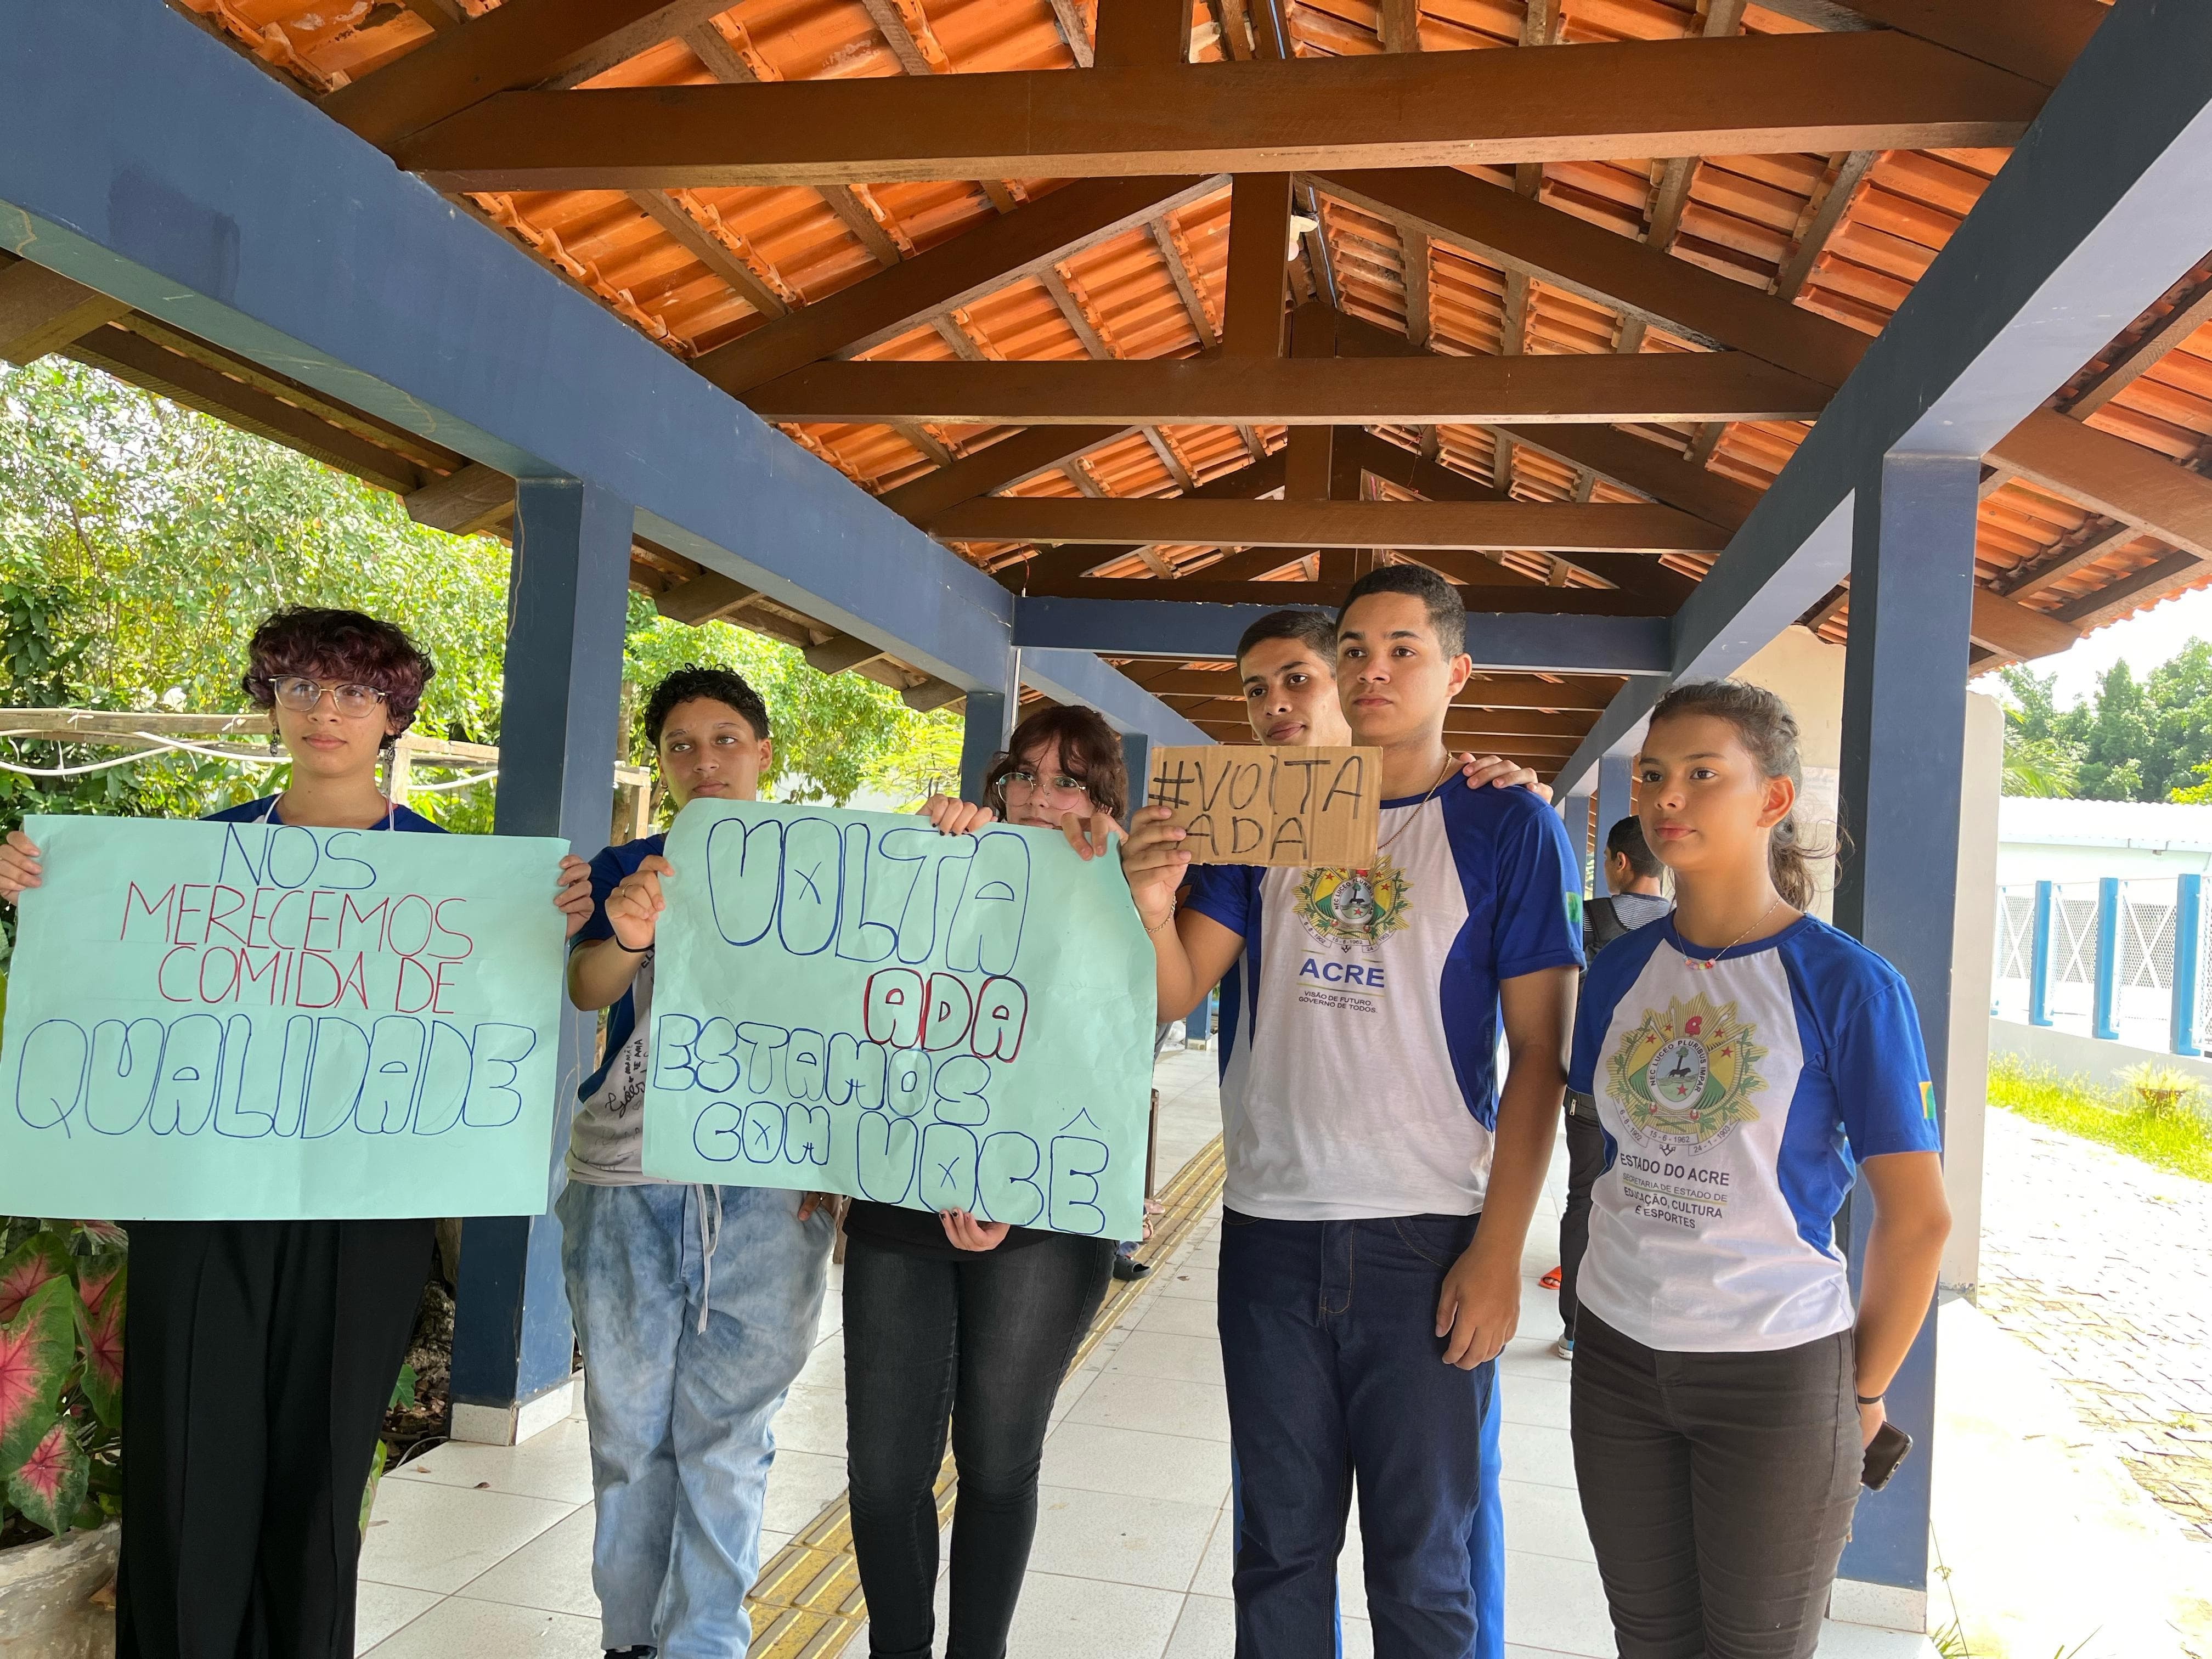 Após denúncias sobre carne estragada em merenda, estudantes protestam em frente à escola no Acre